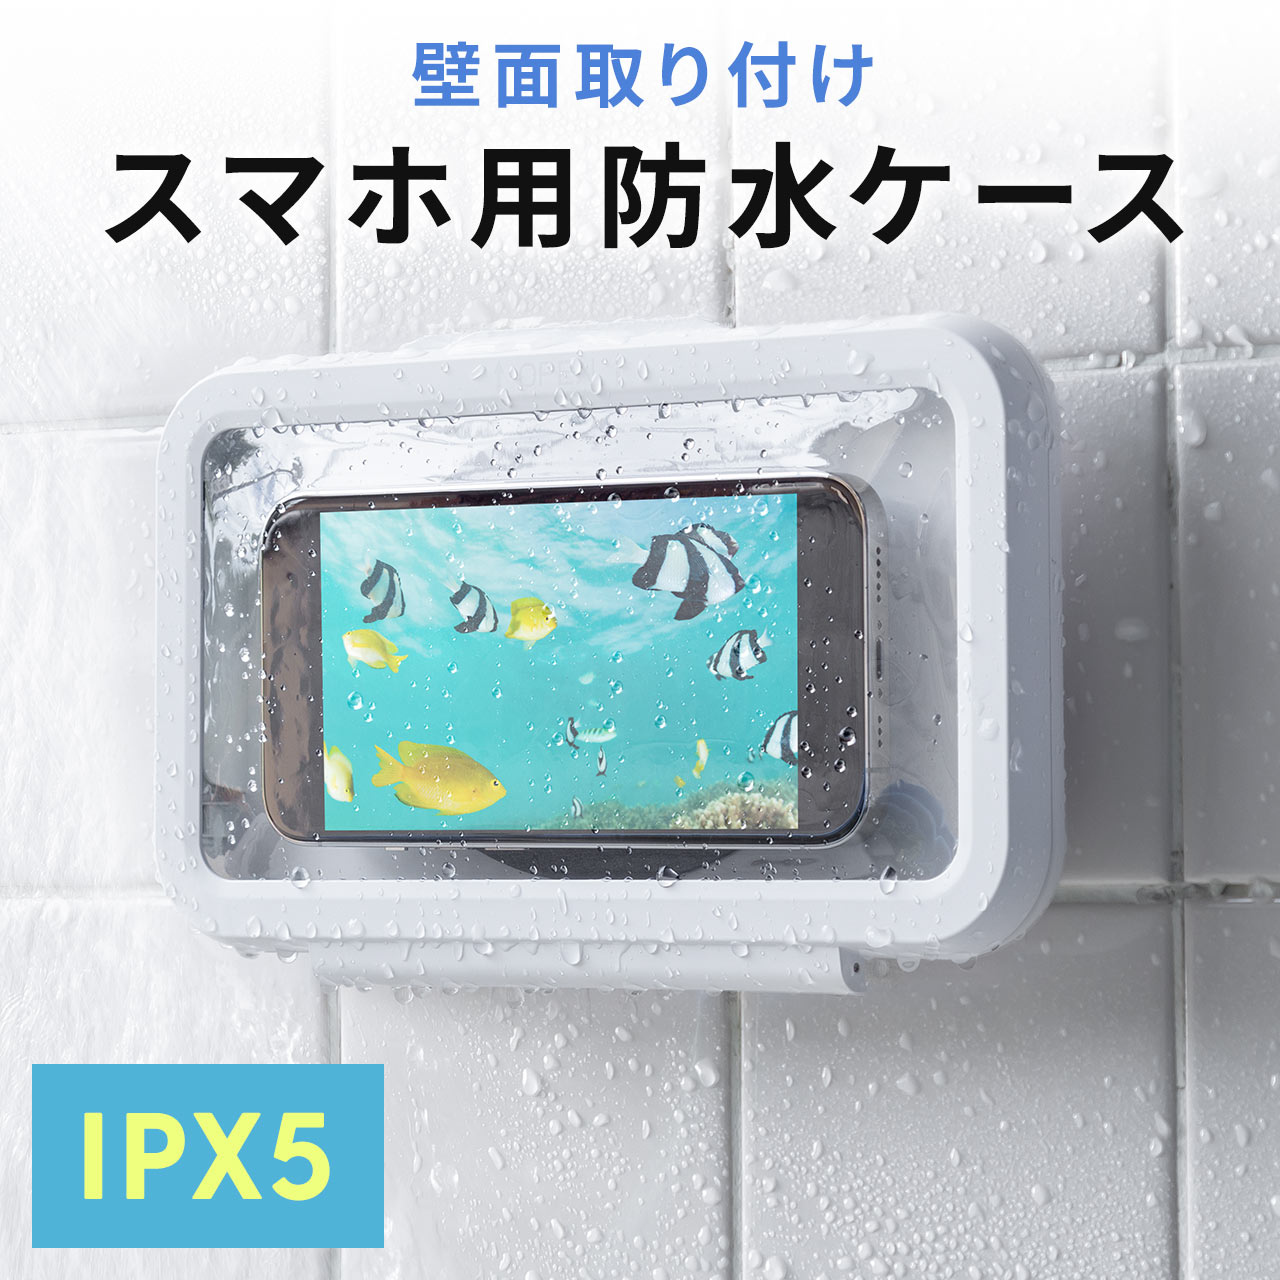 スマホ 防水ケース お風呂 壁掛け タッチ操作可能 6.8インチ iPhone Android 360°回転 マグネット 透明 スタンド ホルダー 携帯 スマホカバー 200-SPC032WP